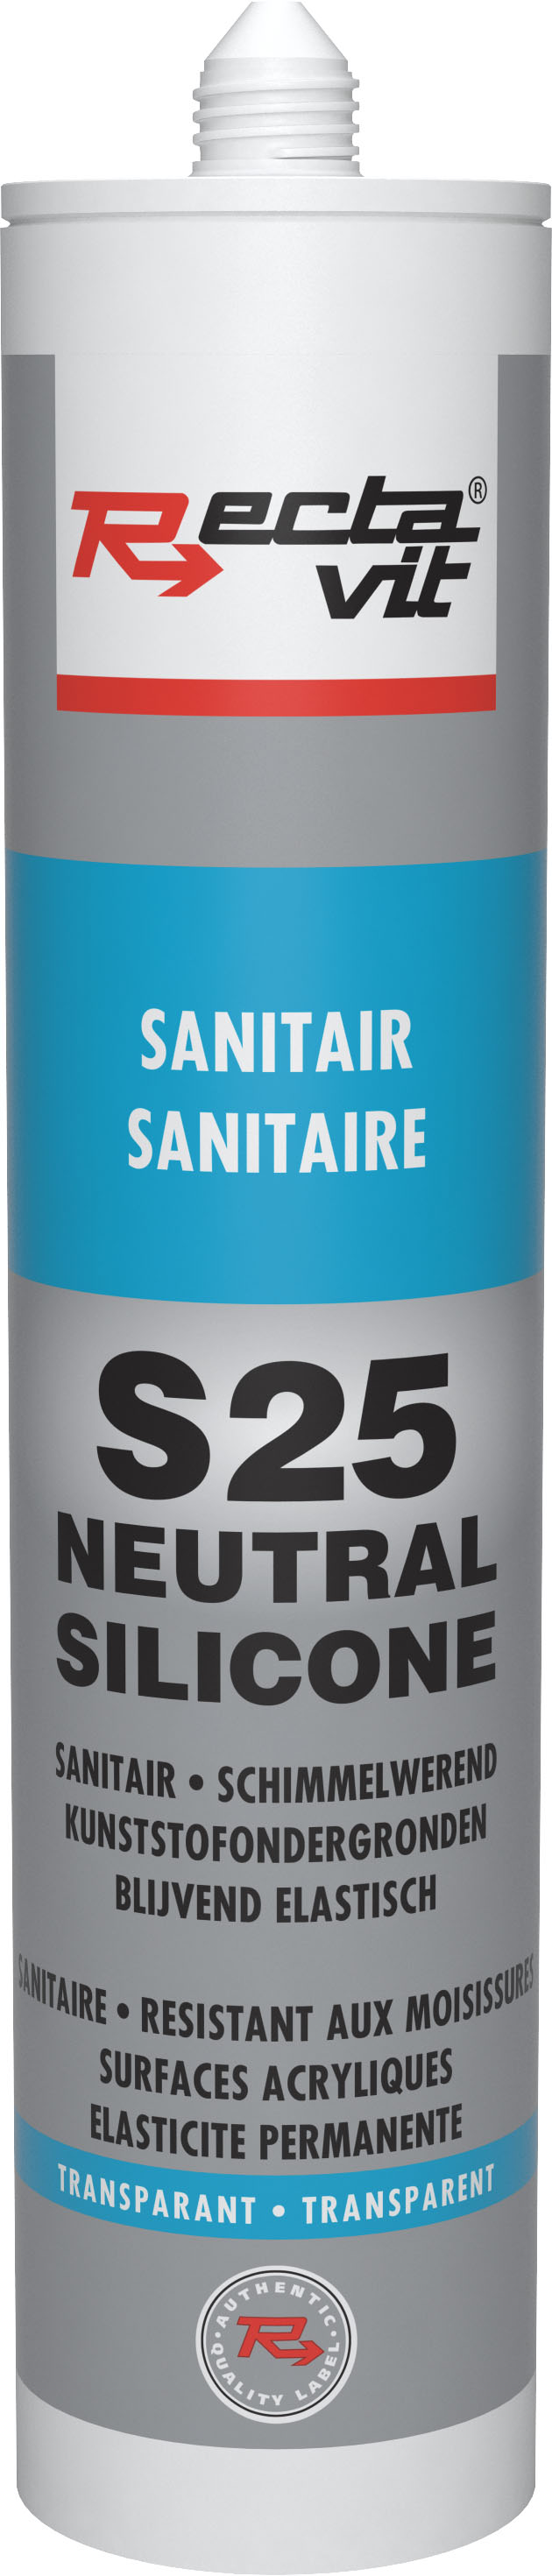 s25 sanitair